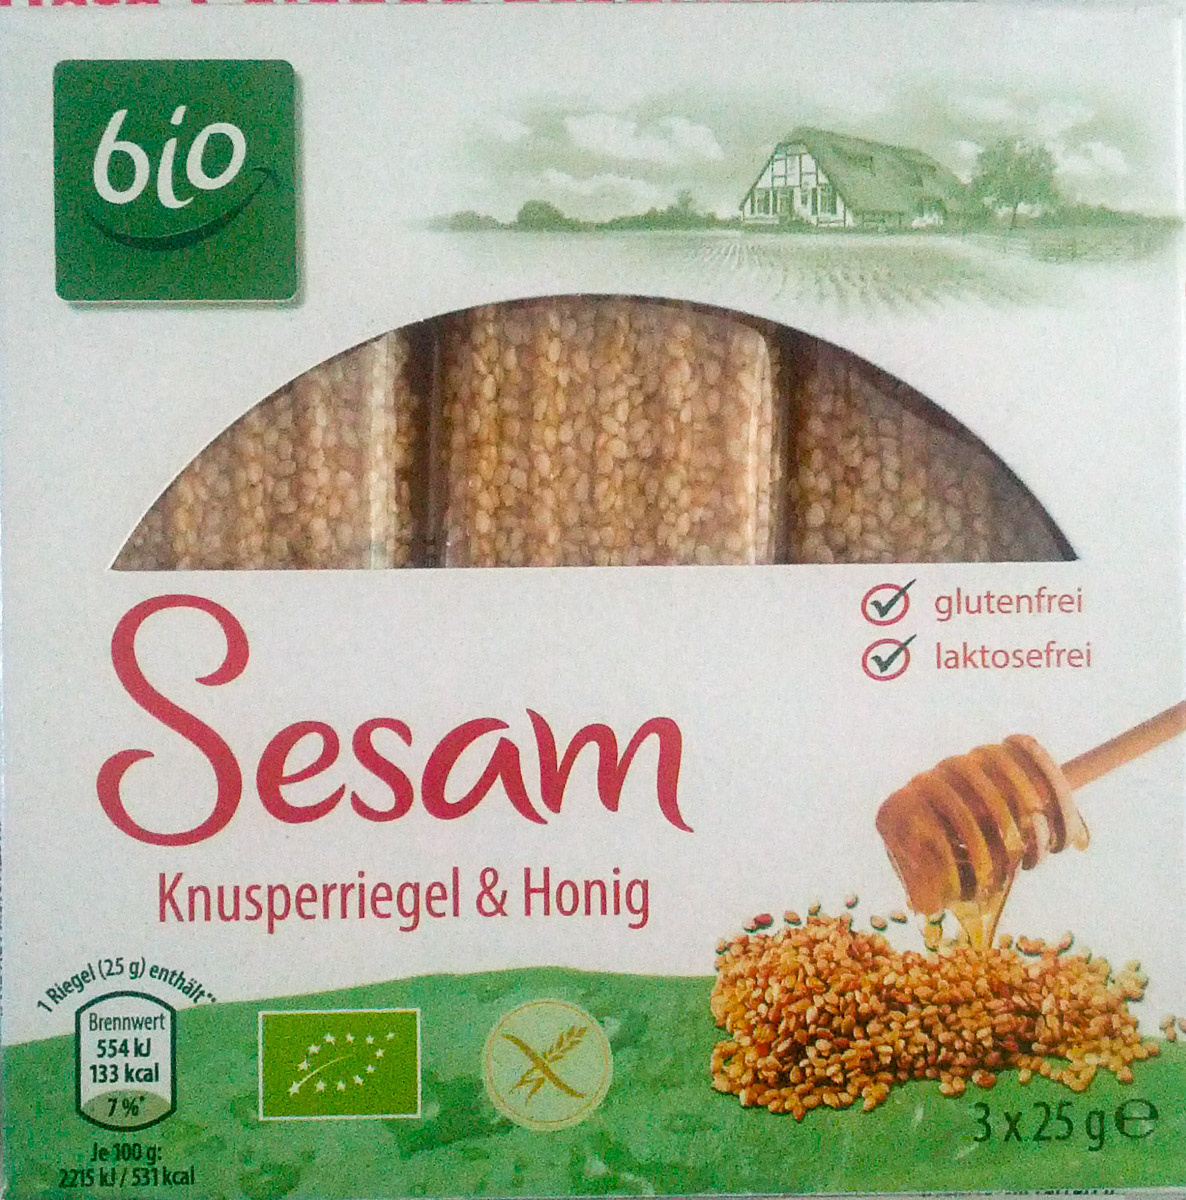 Sesam Knusperriegel & Honig - Product - de